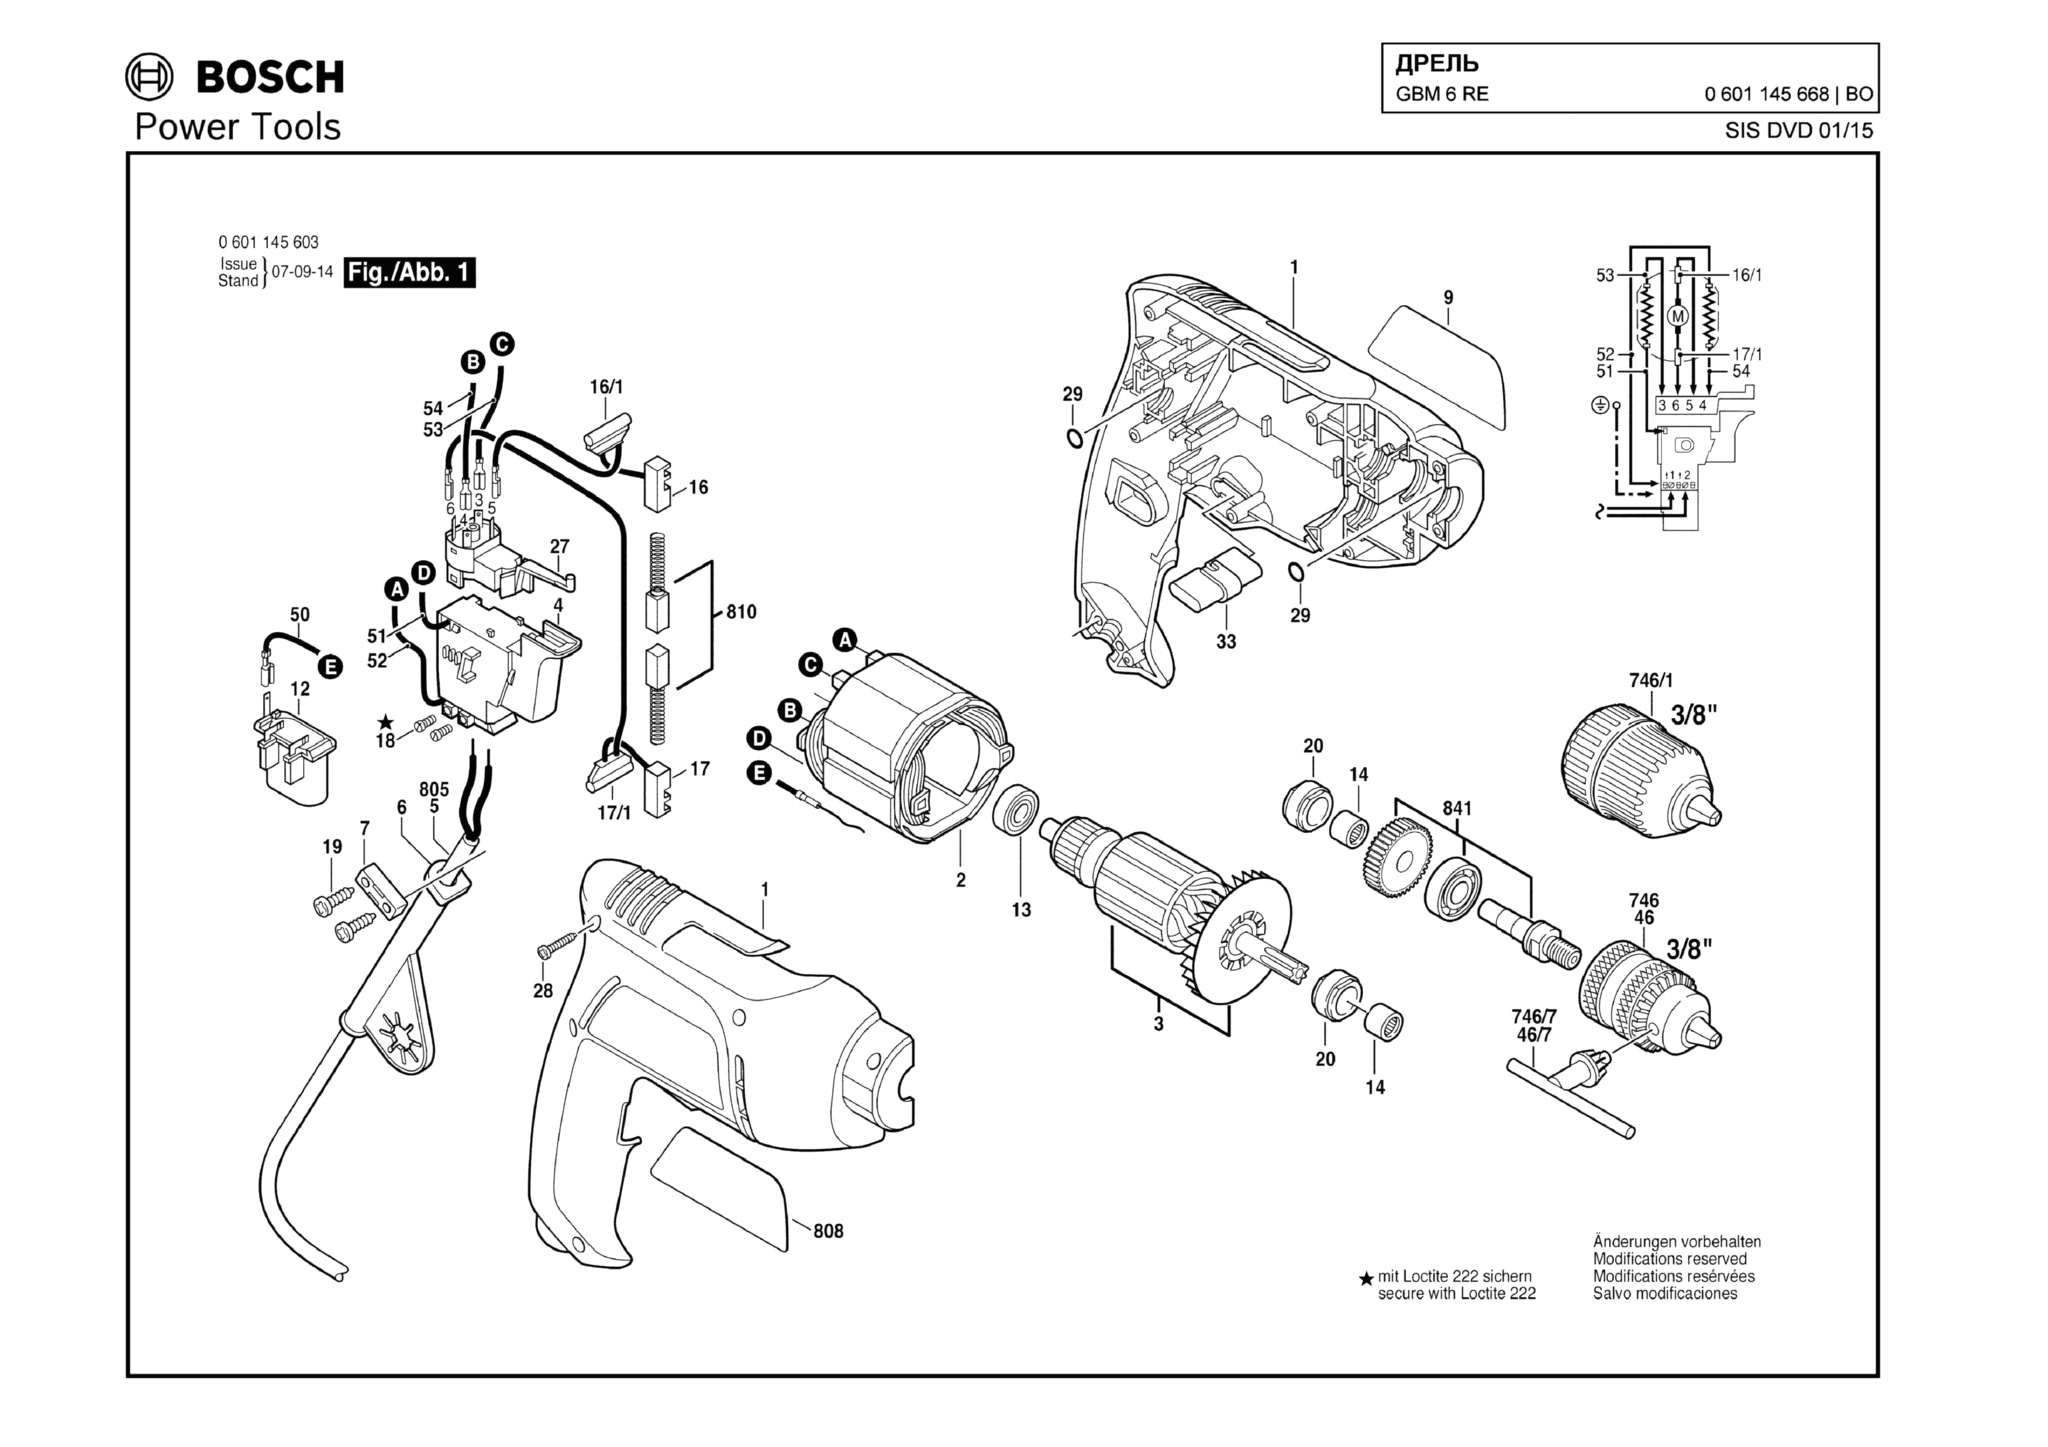 Запчасти, схема и деталировка Bosch GBM 6 RE (ТИП 0601145668)